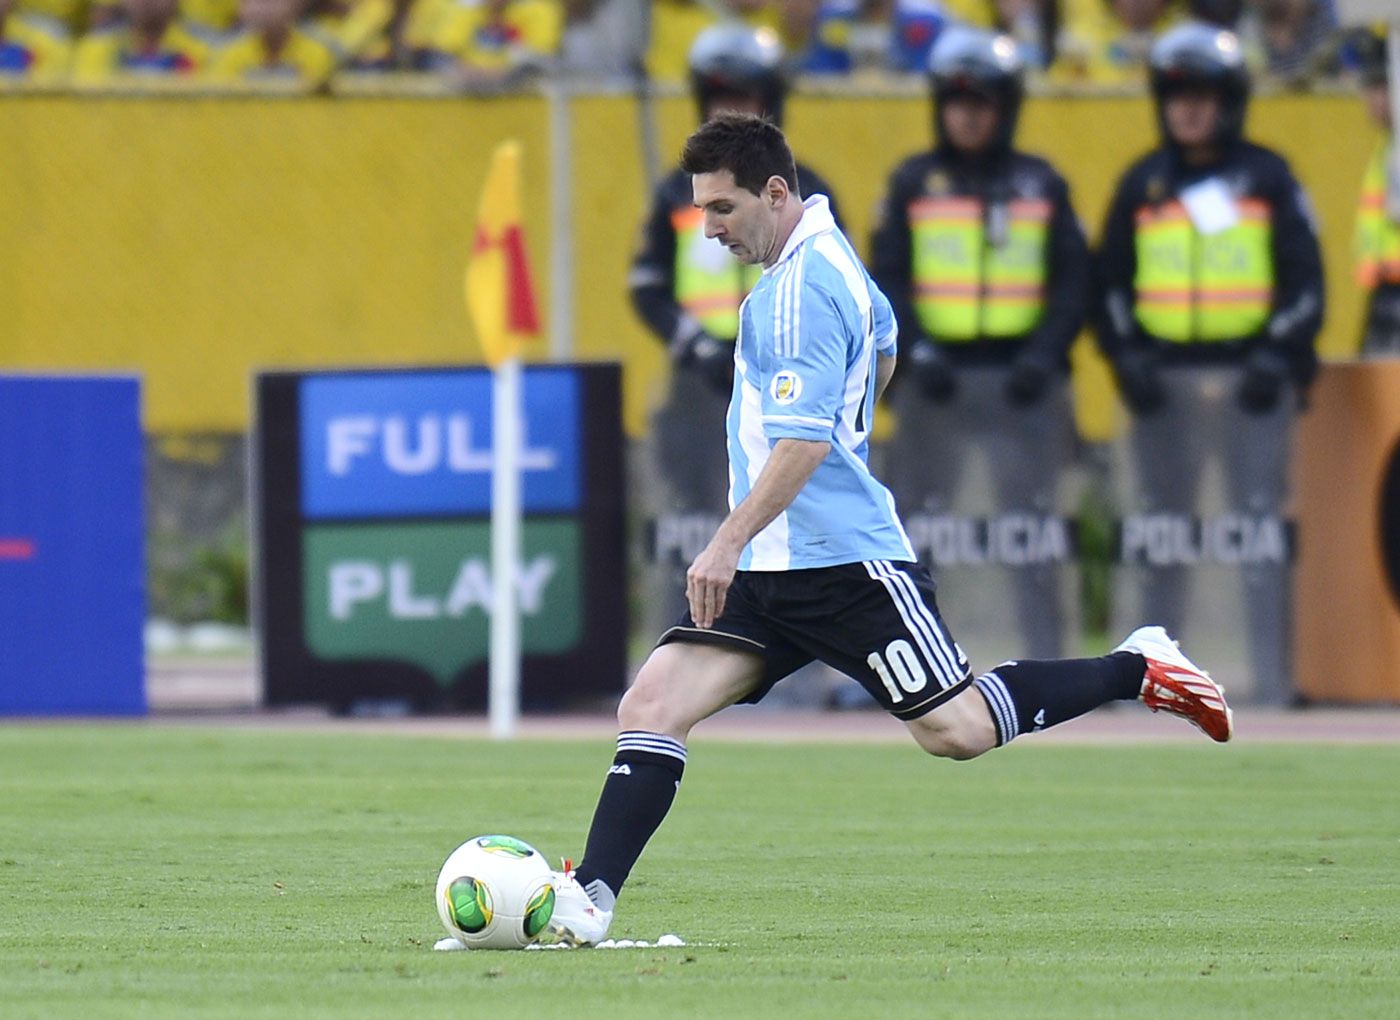 La vez que Pelé y Maradona críticaron a Messi: “No tiene